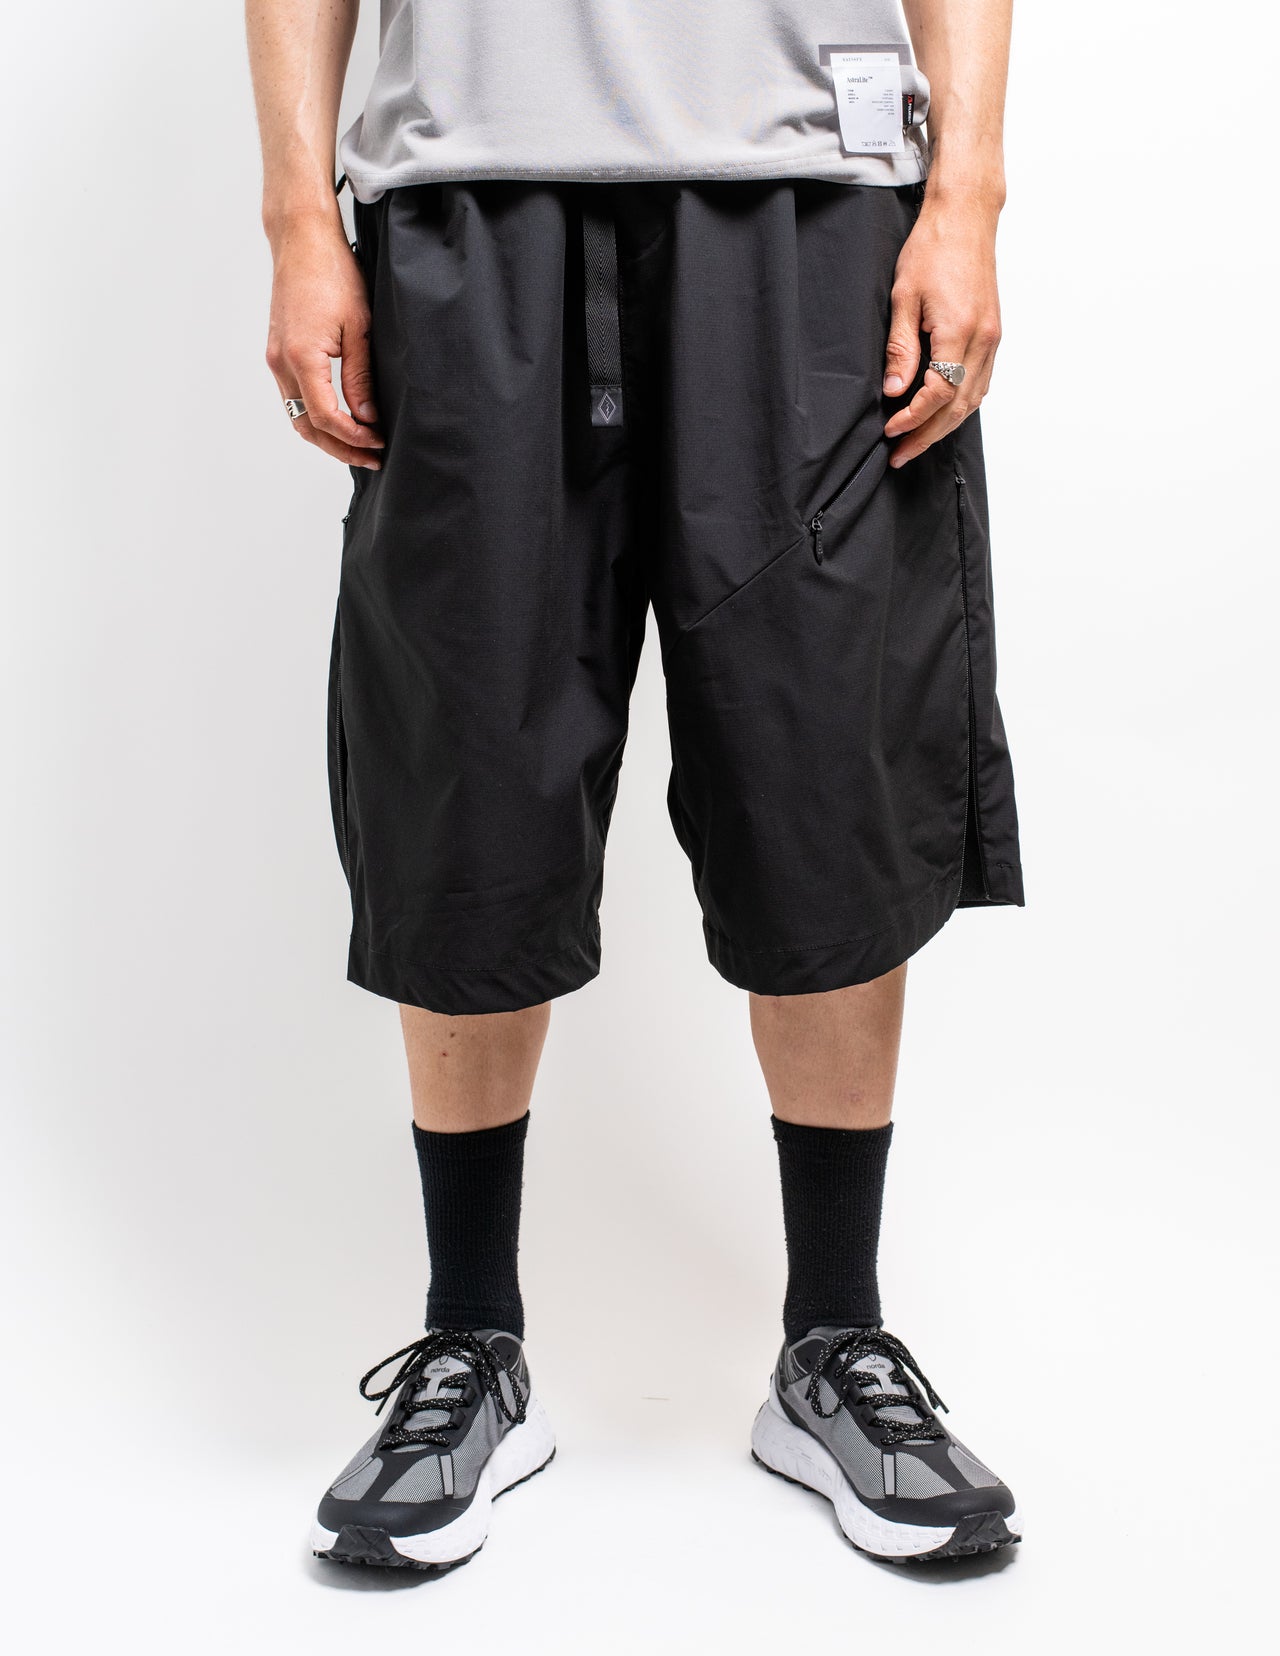 gorpcore oversized nylon shorts from Japan